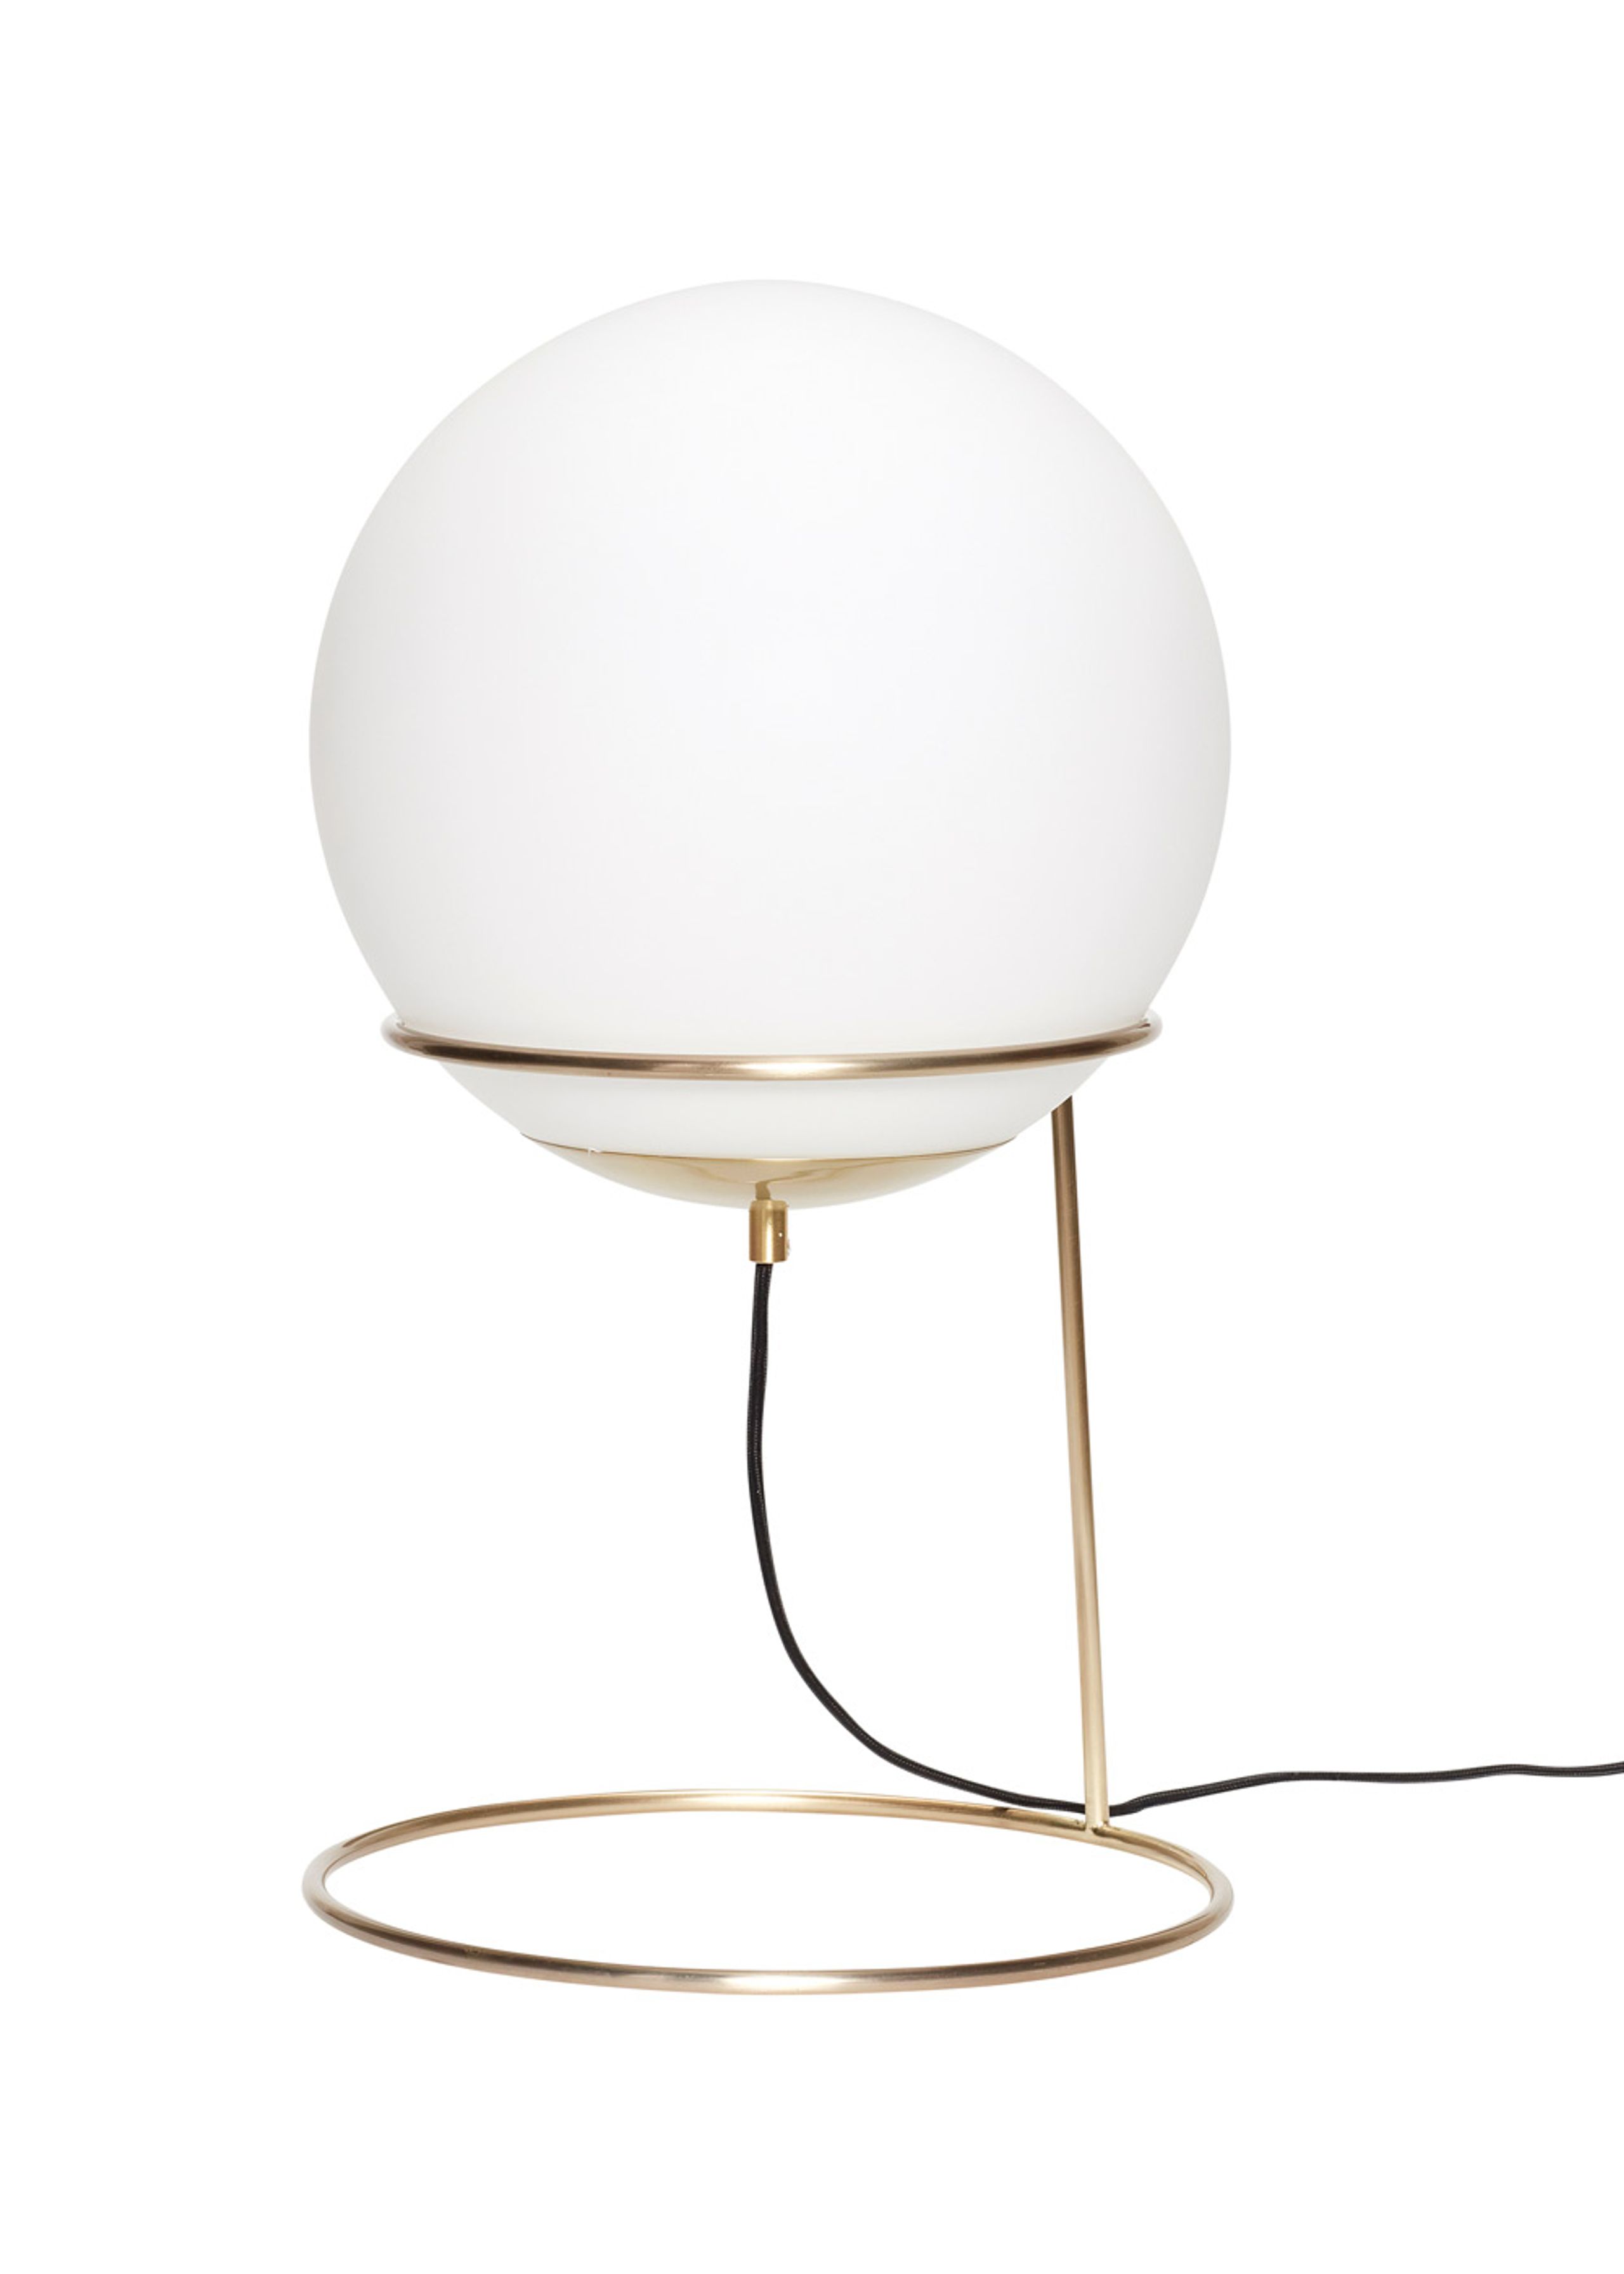 Hübsch - Balance Lamp H53 - Floor Lamp - Small - Brass/Glass